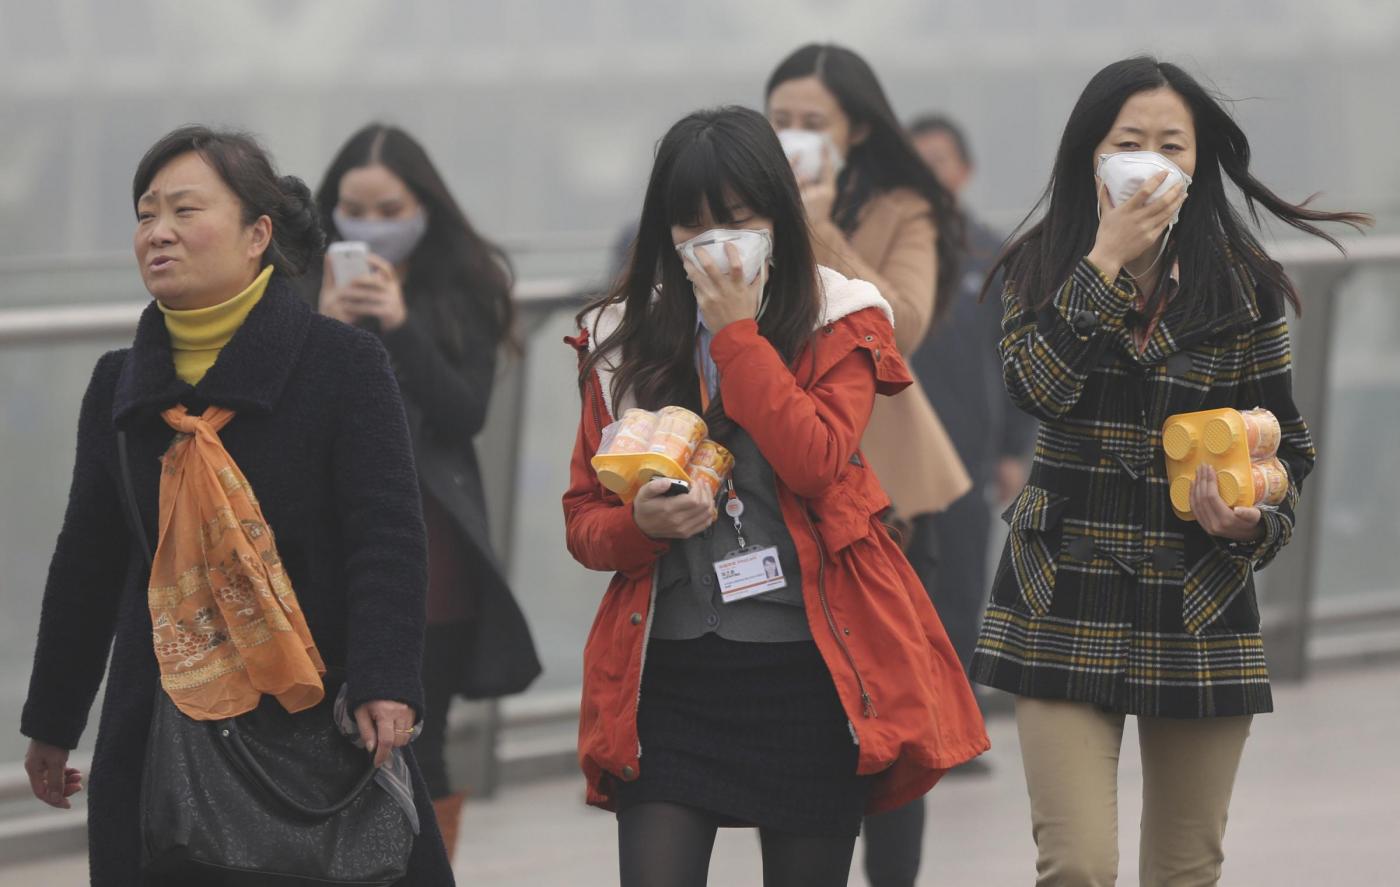 Allarme inquinamento a Shanghai